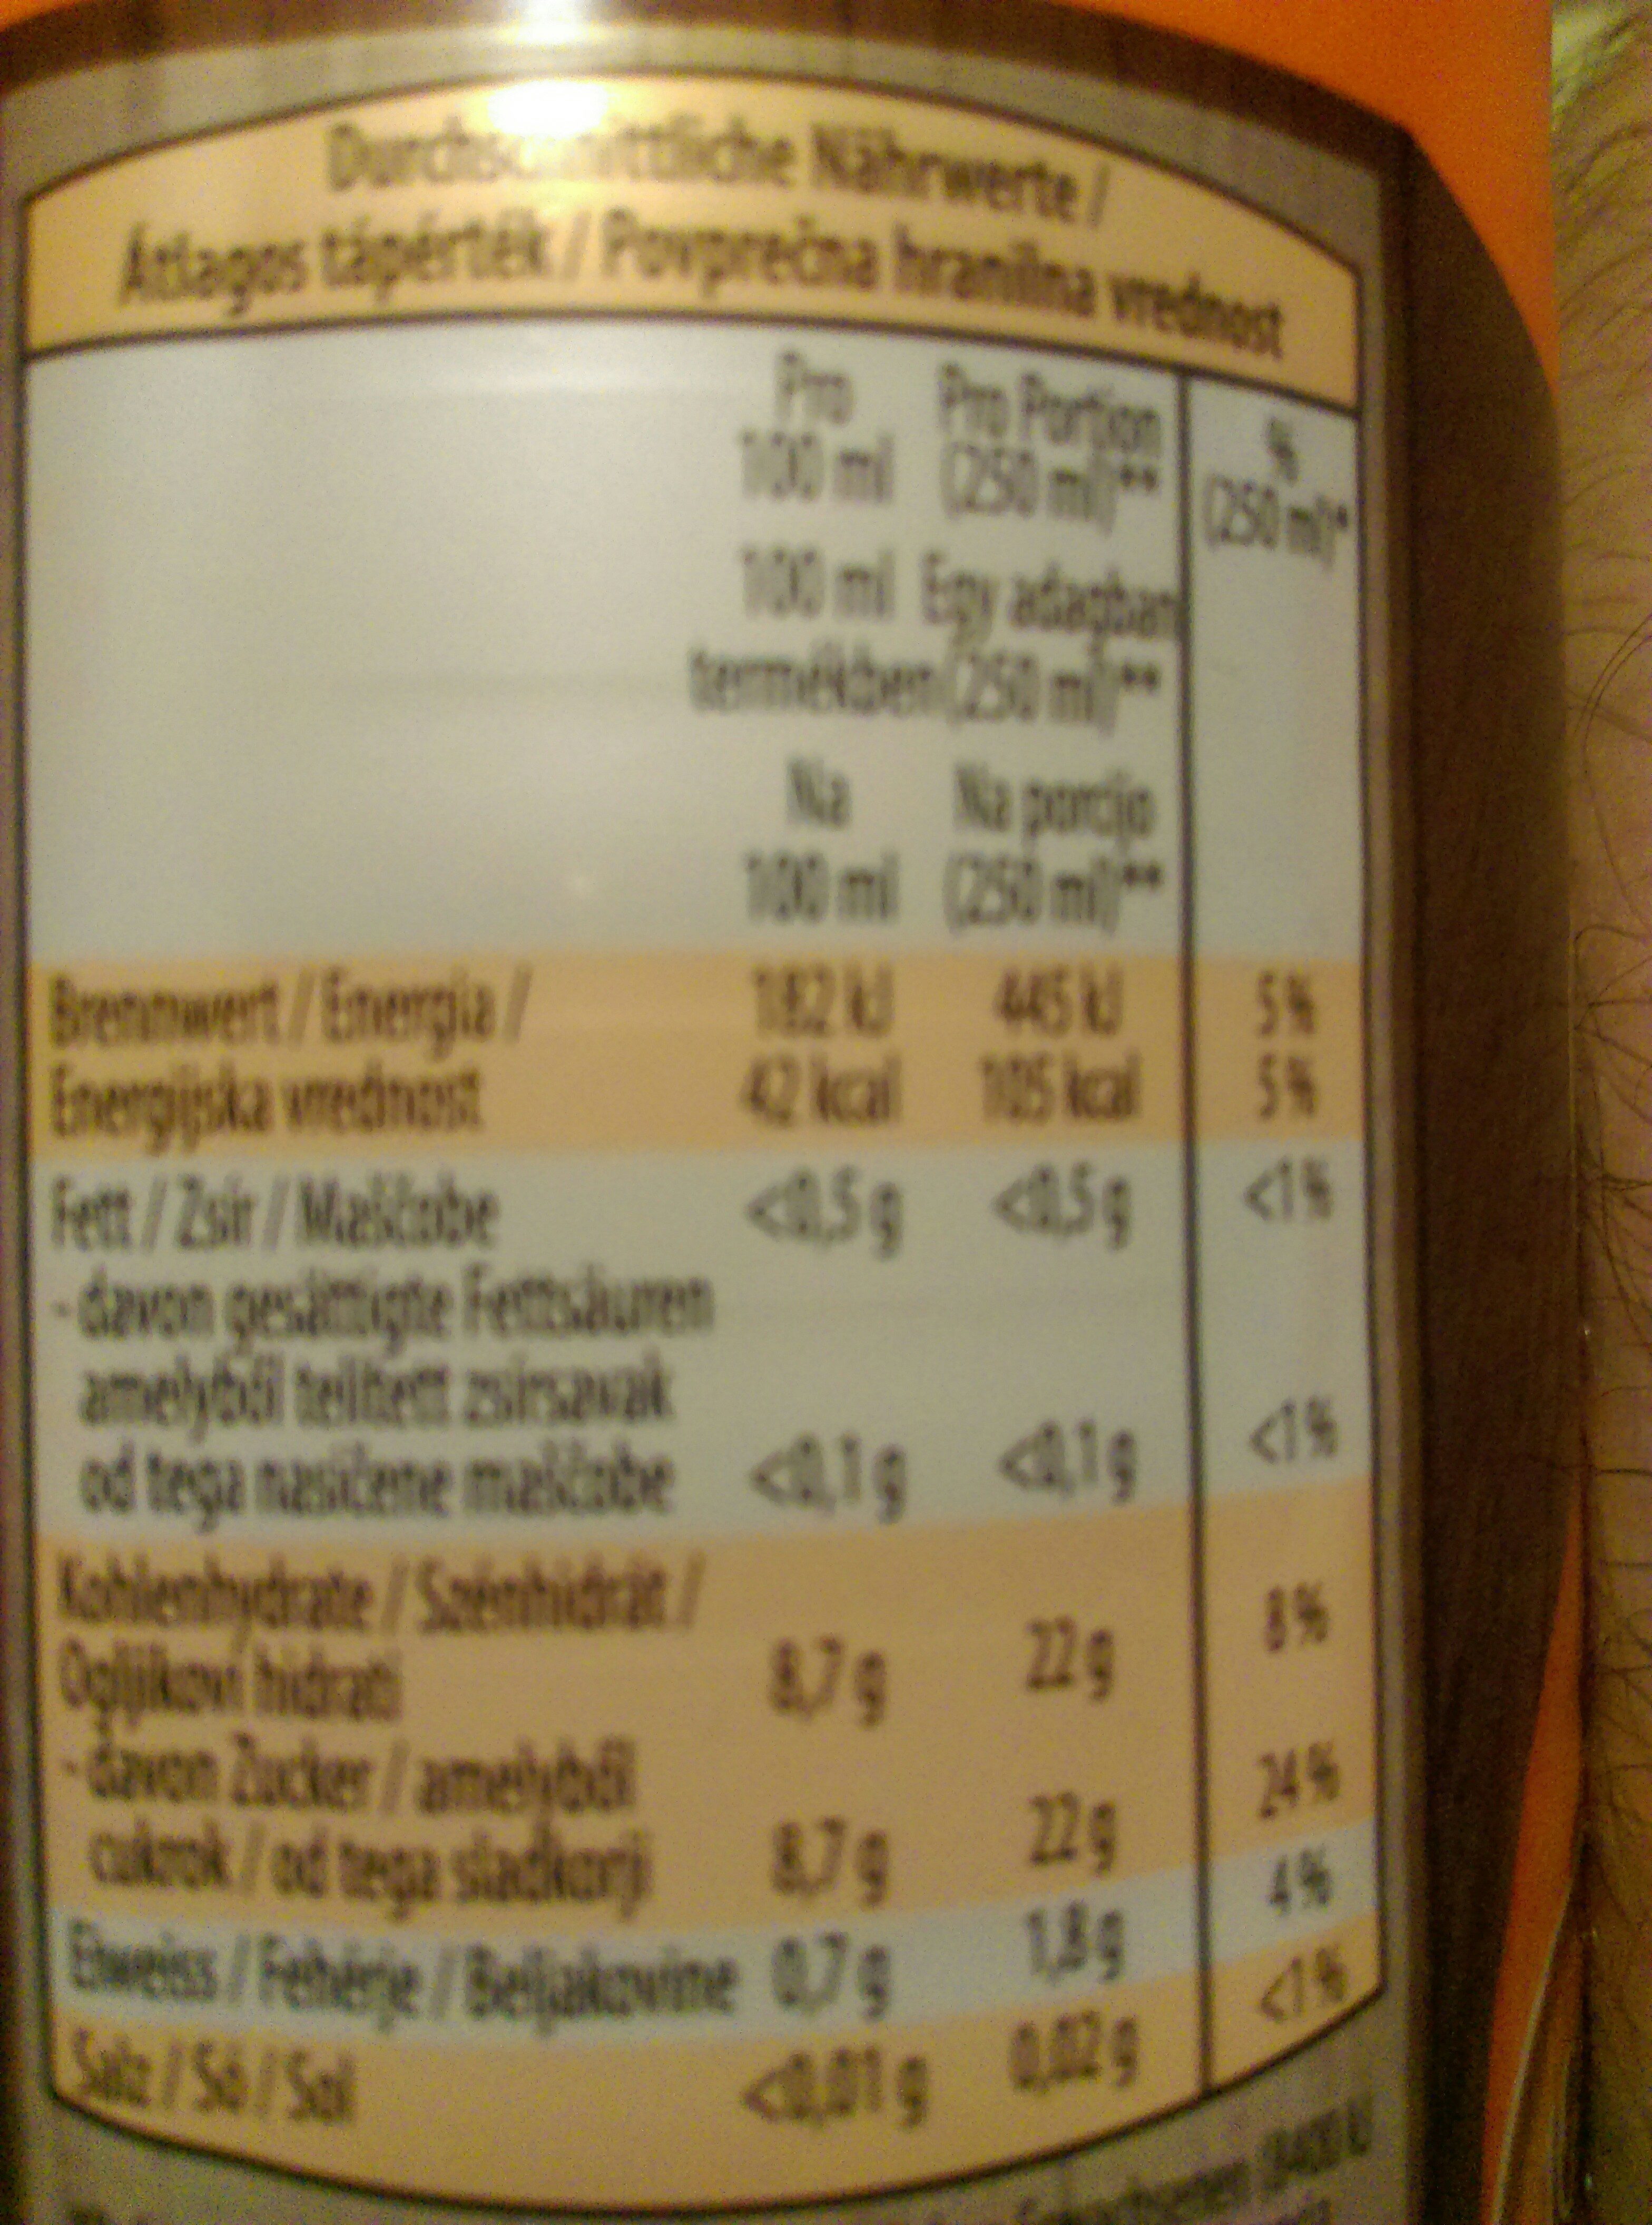 Orangensaft Pure Fruits Hofer - Ingredients - de